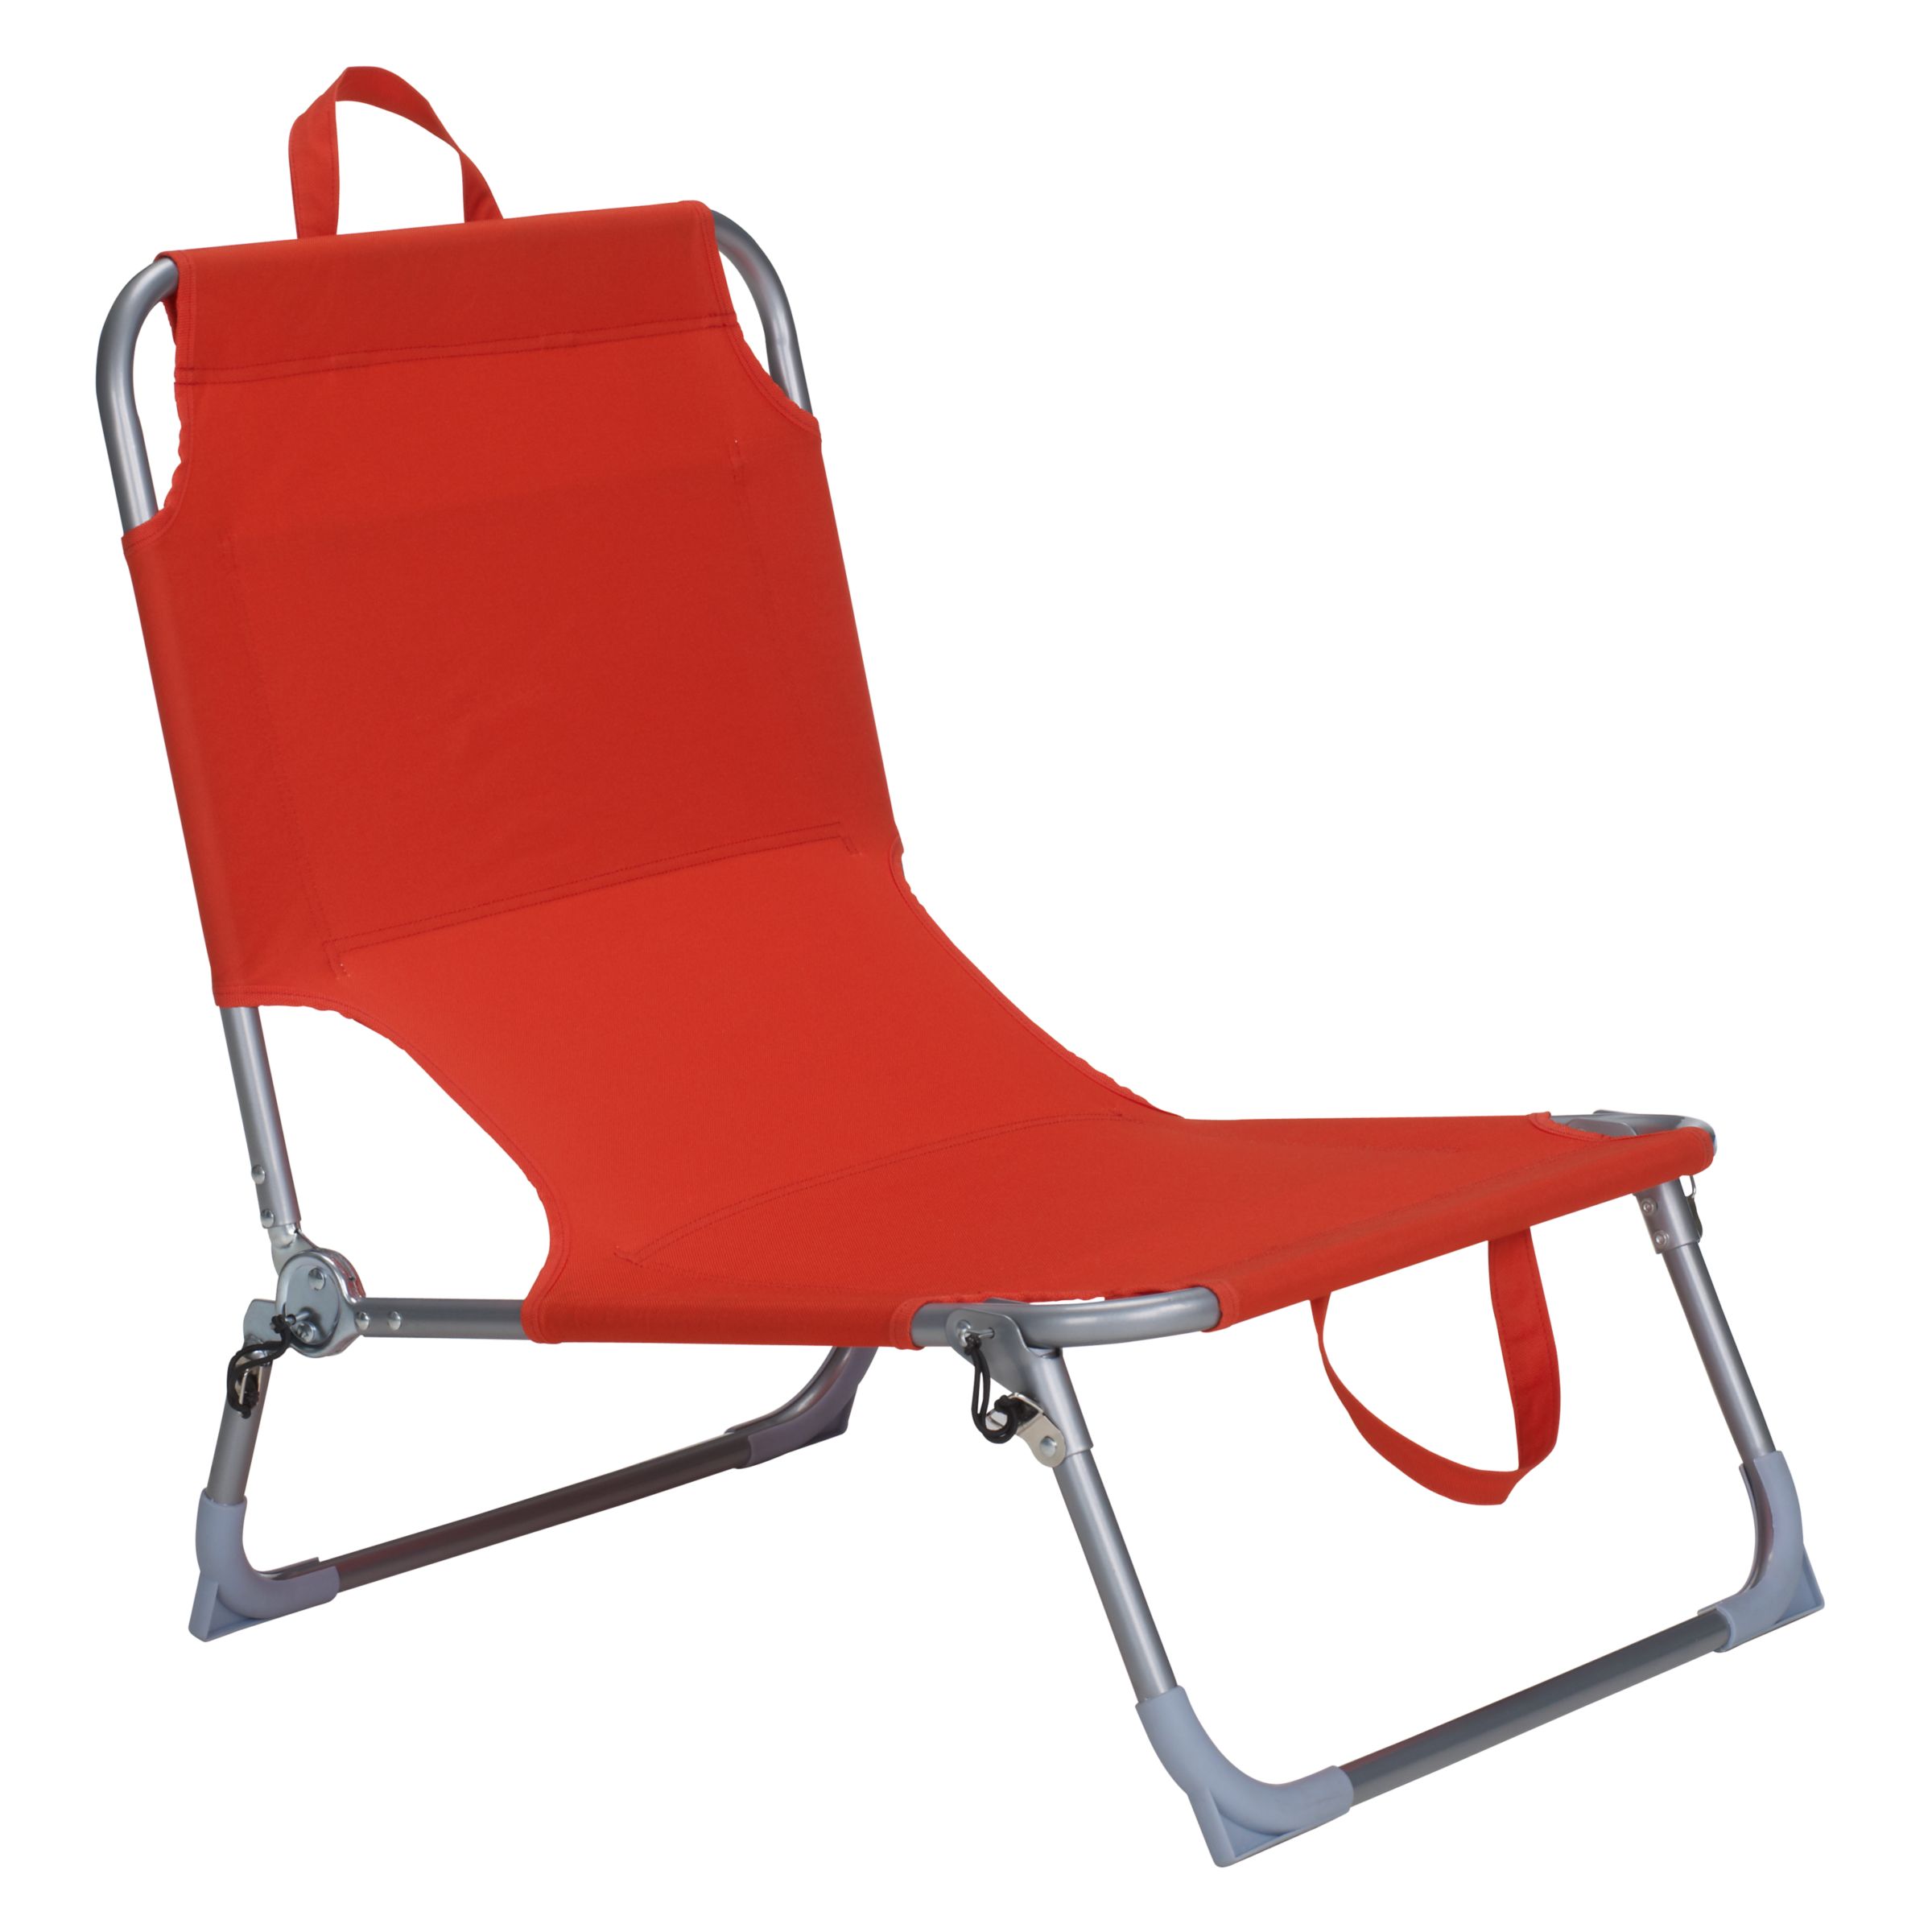 John Lewis Beach Chair, Chilli